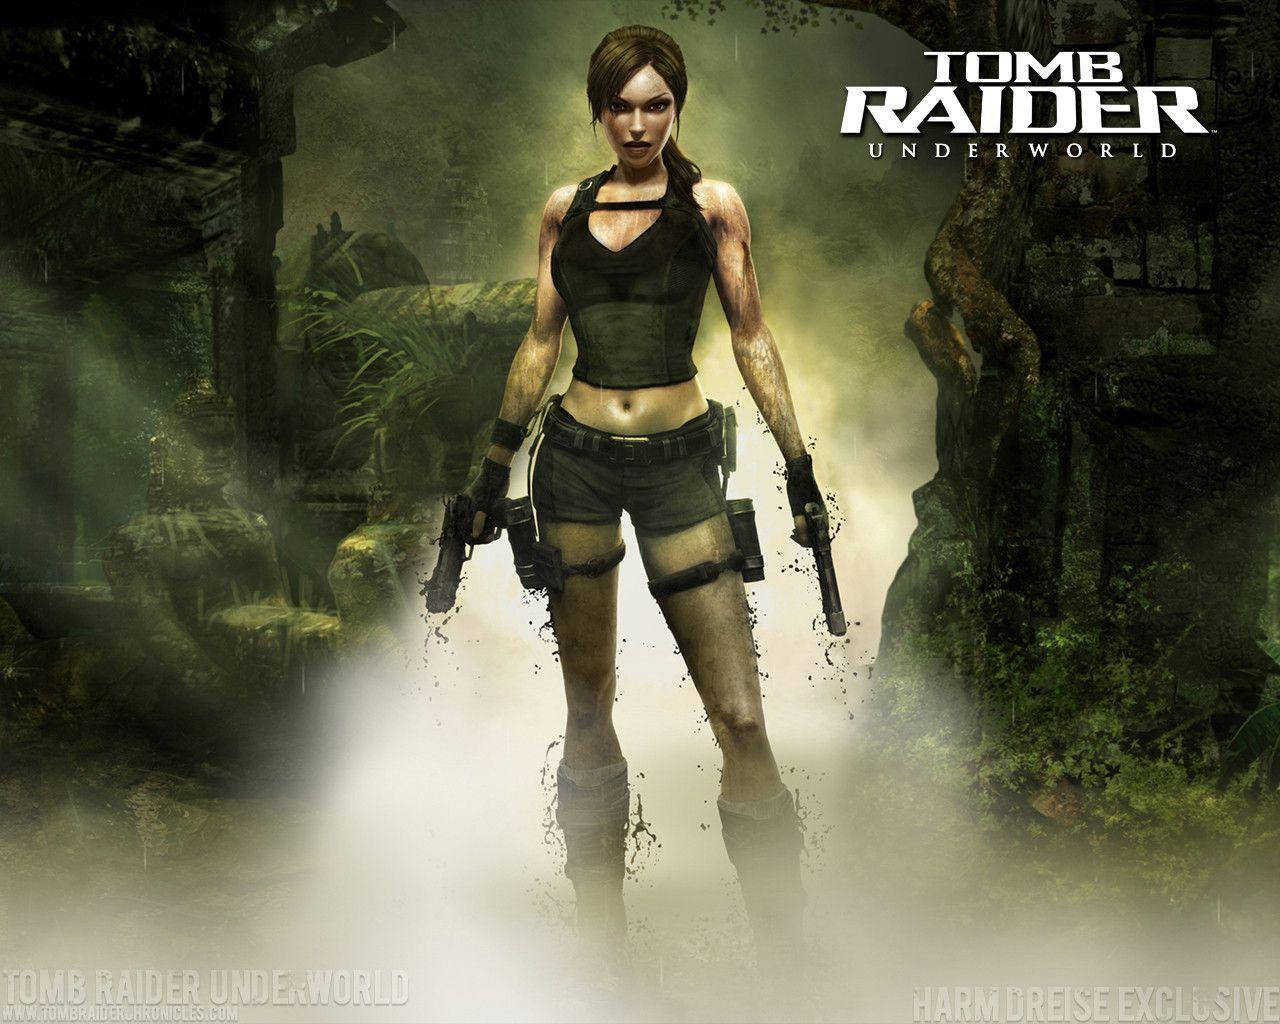 Descubrao Poder De Lara Croft No Jogo Tomb Raider. Papel de Parede